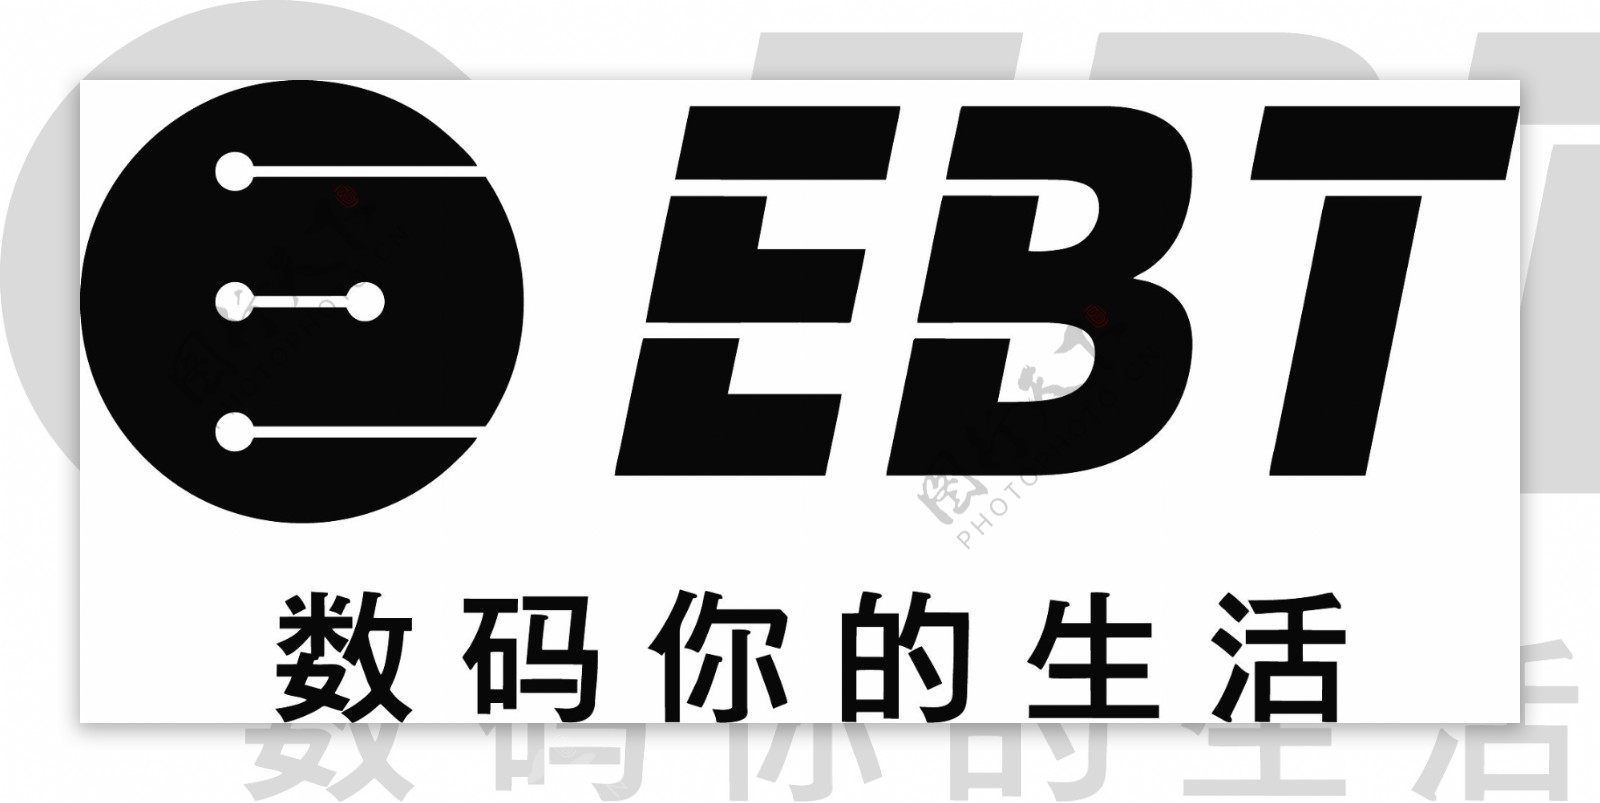 EBT数码通信logo标识